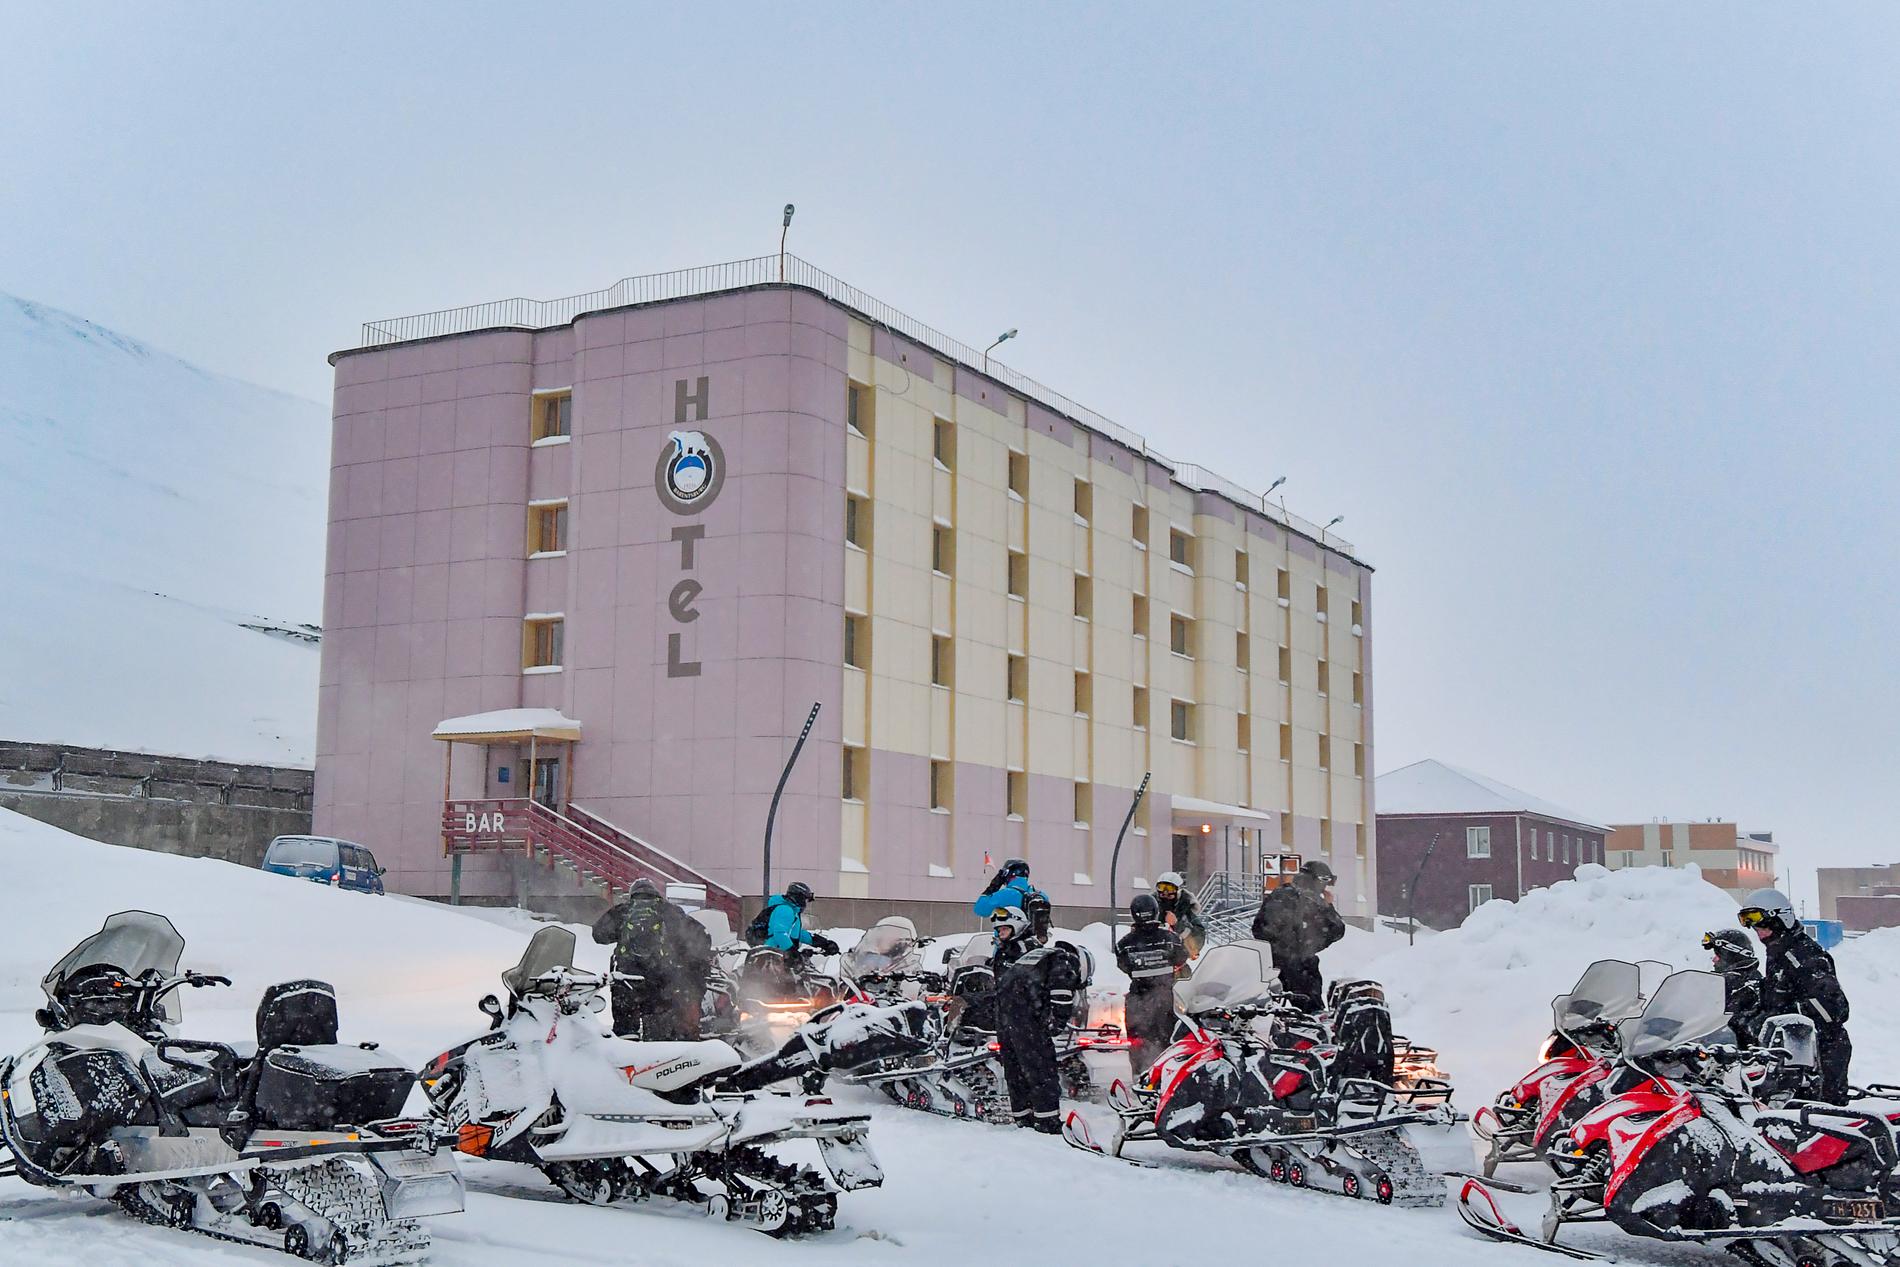 Barentsburg satsar allt mer på att locka turister och byggnader i det lilla samhället har fått sig en rejäl ansiktslyftning de senaste åren. På vintern går det bara att ta sig hit med skoter.